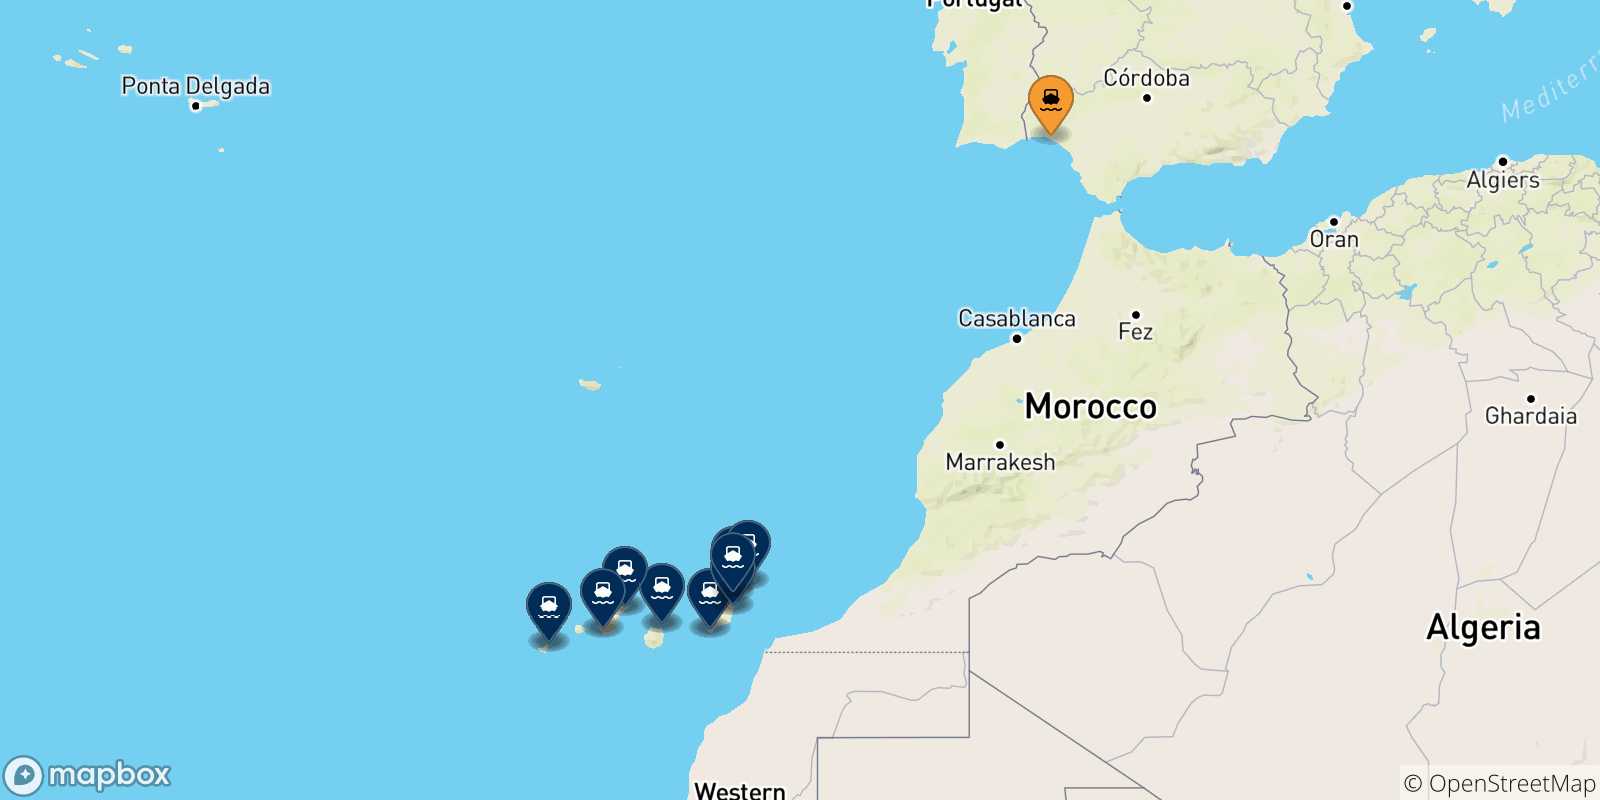 Mappa dei porti collegati con le Isole Canarie